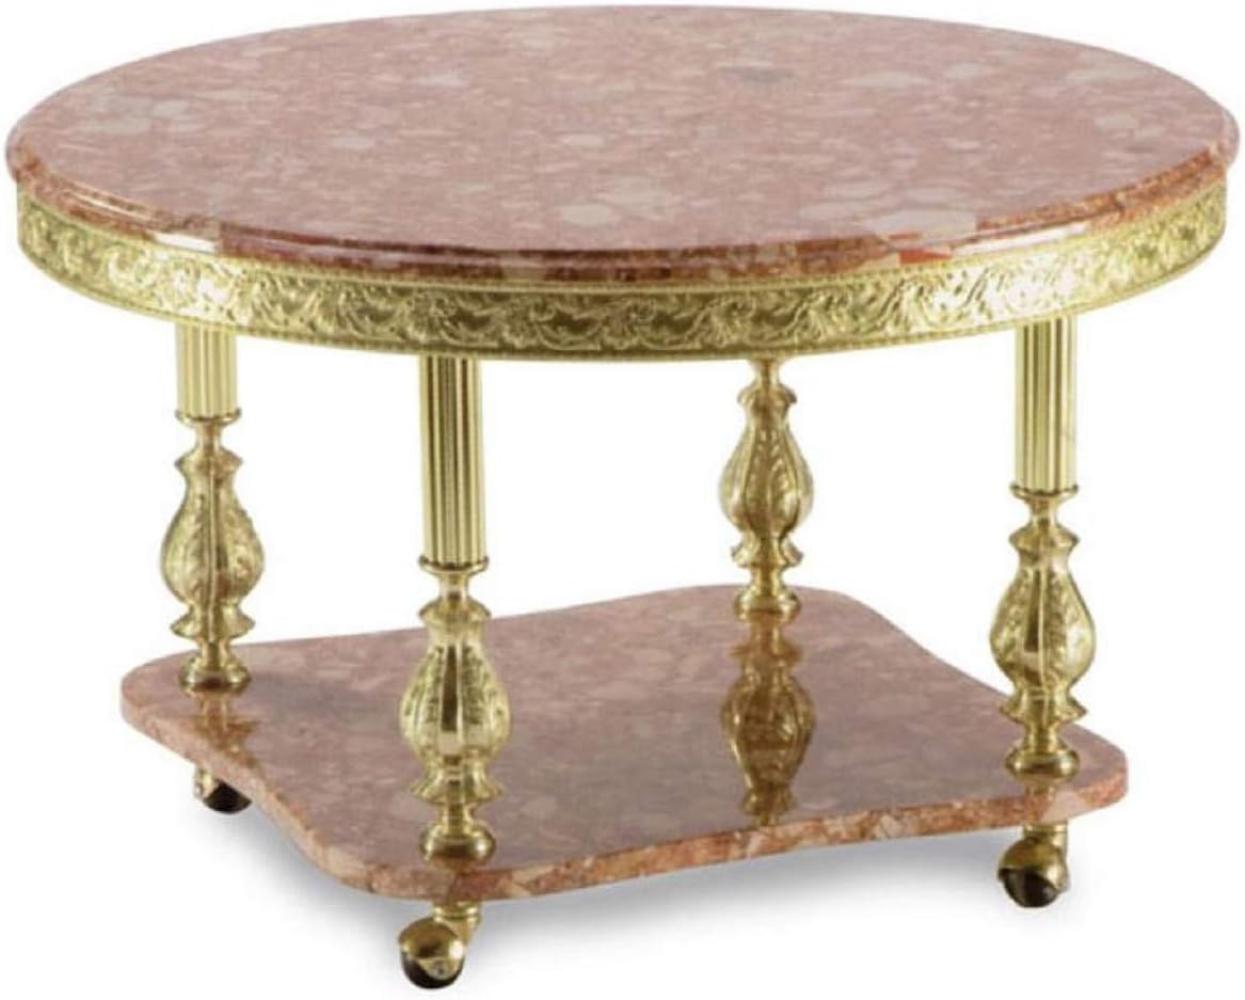 Casa Padrino Luxus Barock Couchtisch Pink / Gold Ø 80 x H. 43 cm - Runder Messing Wohnzimmertisch mit Marmorplatte und Rollen - Barock Wohnzimmer Möbel Bild 1